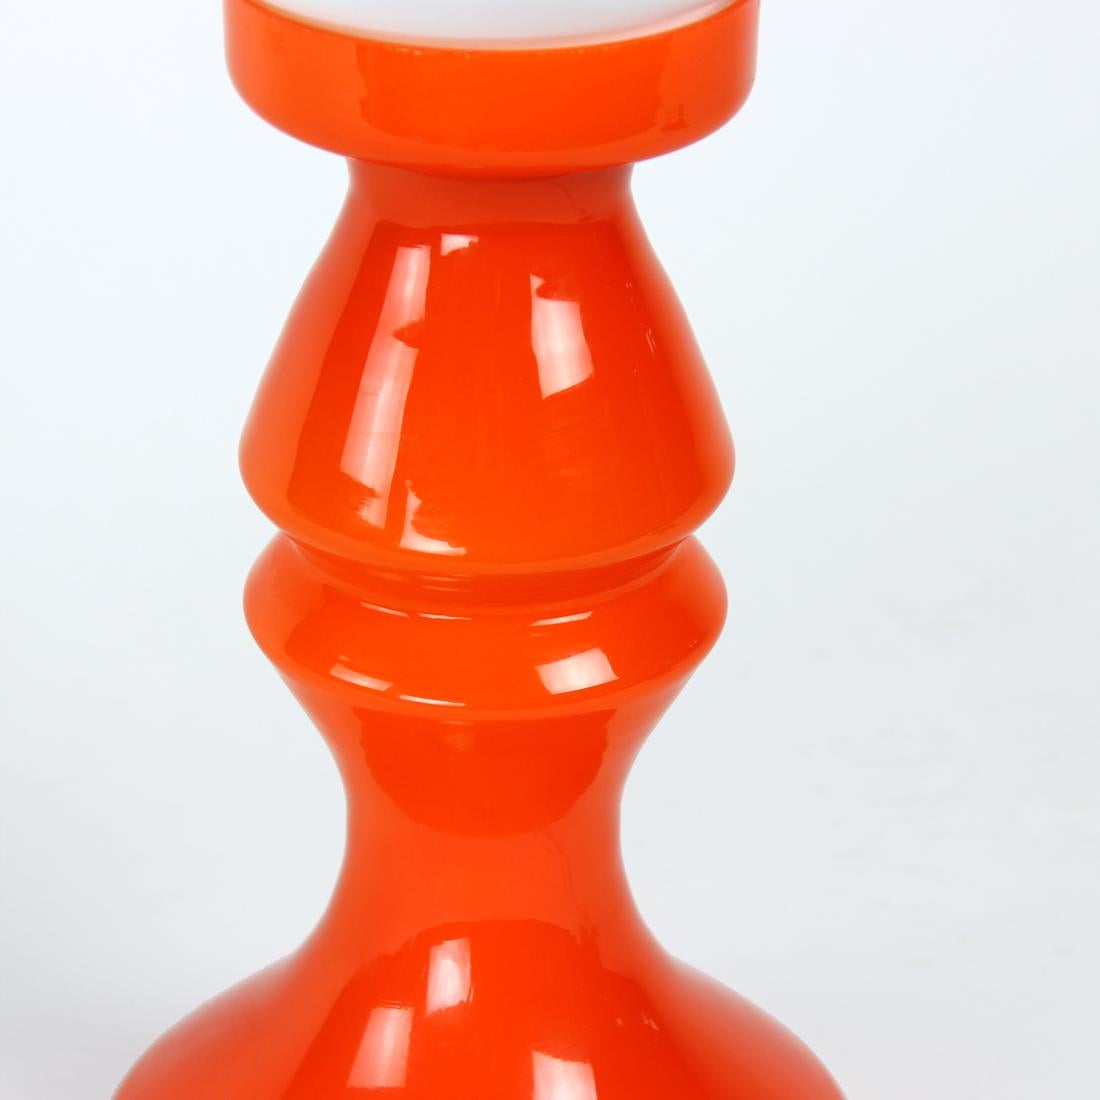 Unique Orange Glass Table Lamp by Vitropol, Poland, 1960s For Sale 2